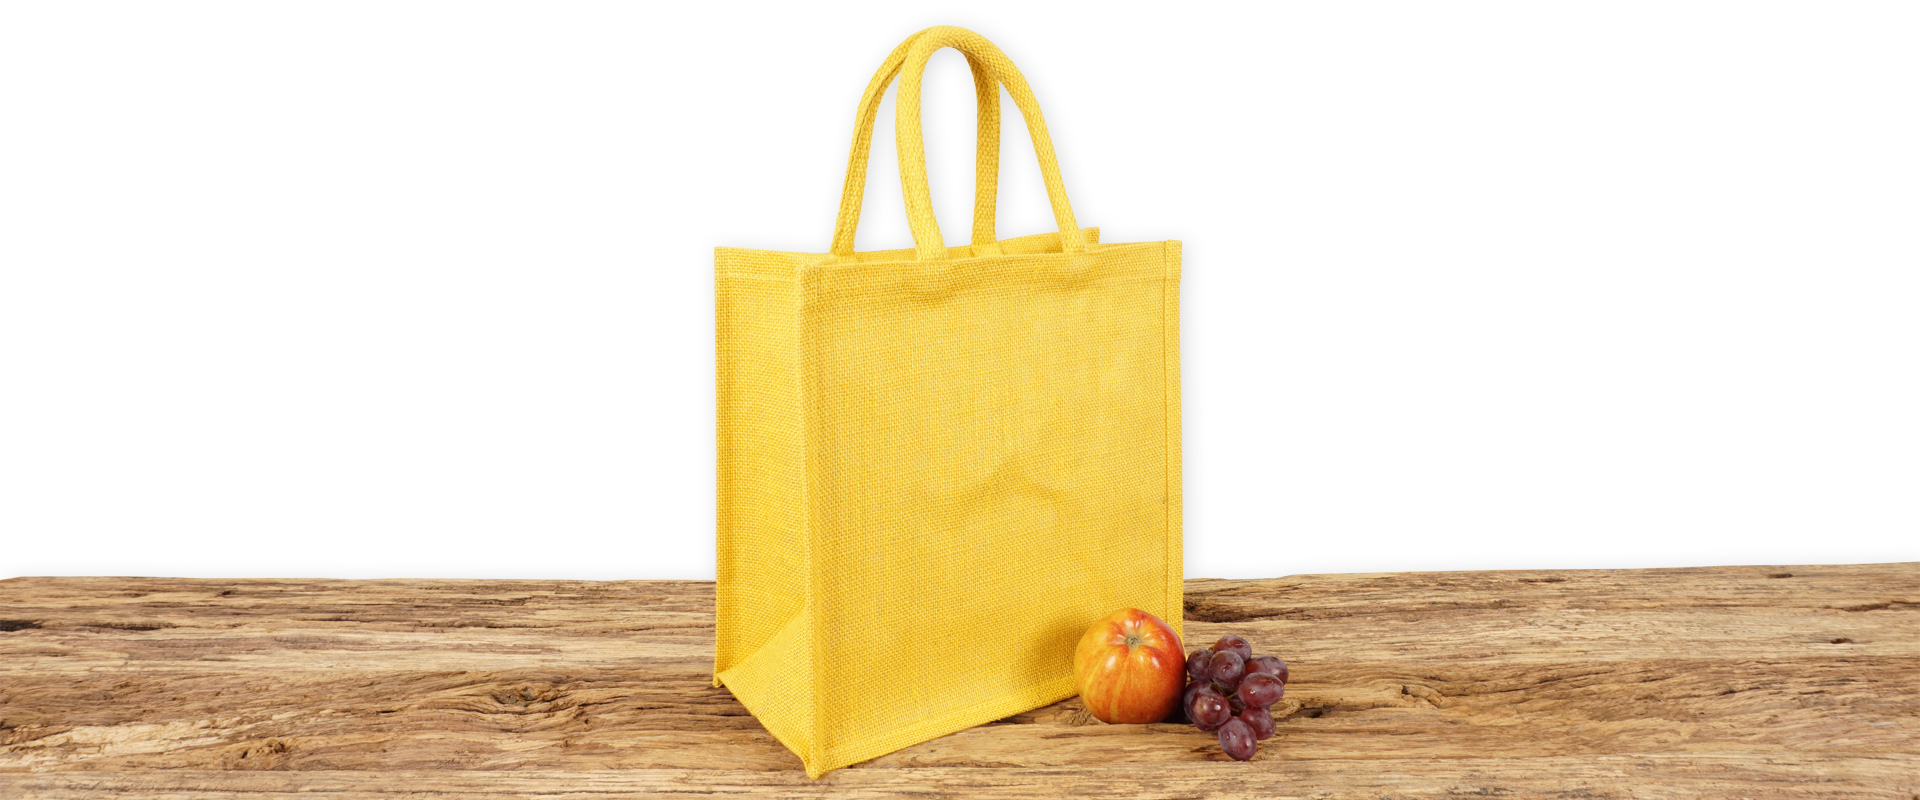 Einkaufstasche aus Jute zum Bedrucken für Gewerbekunden in gelb mit Seiten-Bodenfalte, klein und mit kurzen Tragegriffen auf Holz.